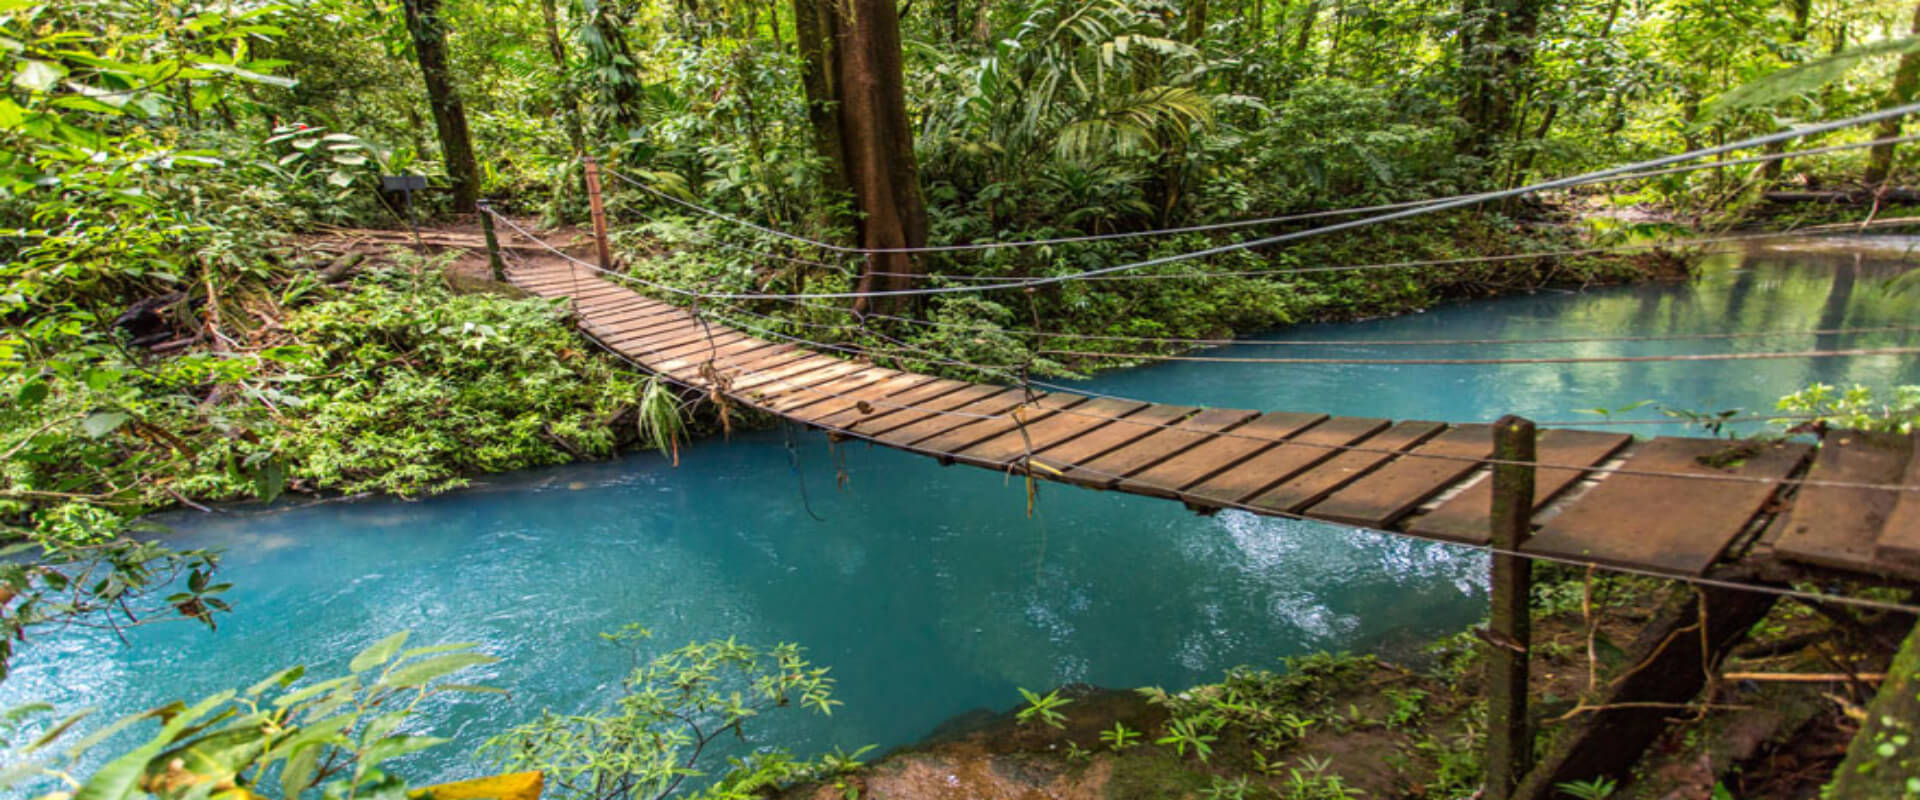 Caminata guiada al Parque Nacional Río Celeste | Costa Rica Jade Tours